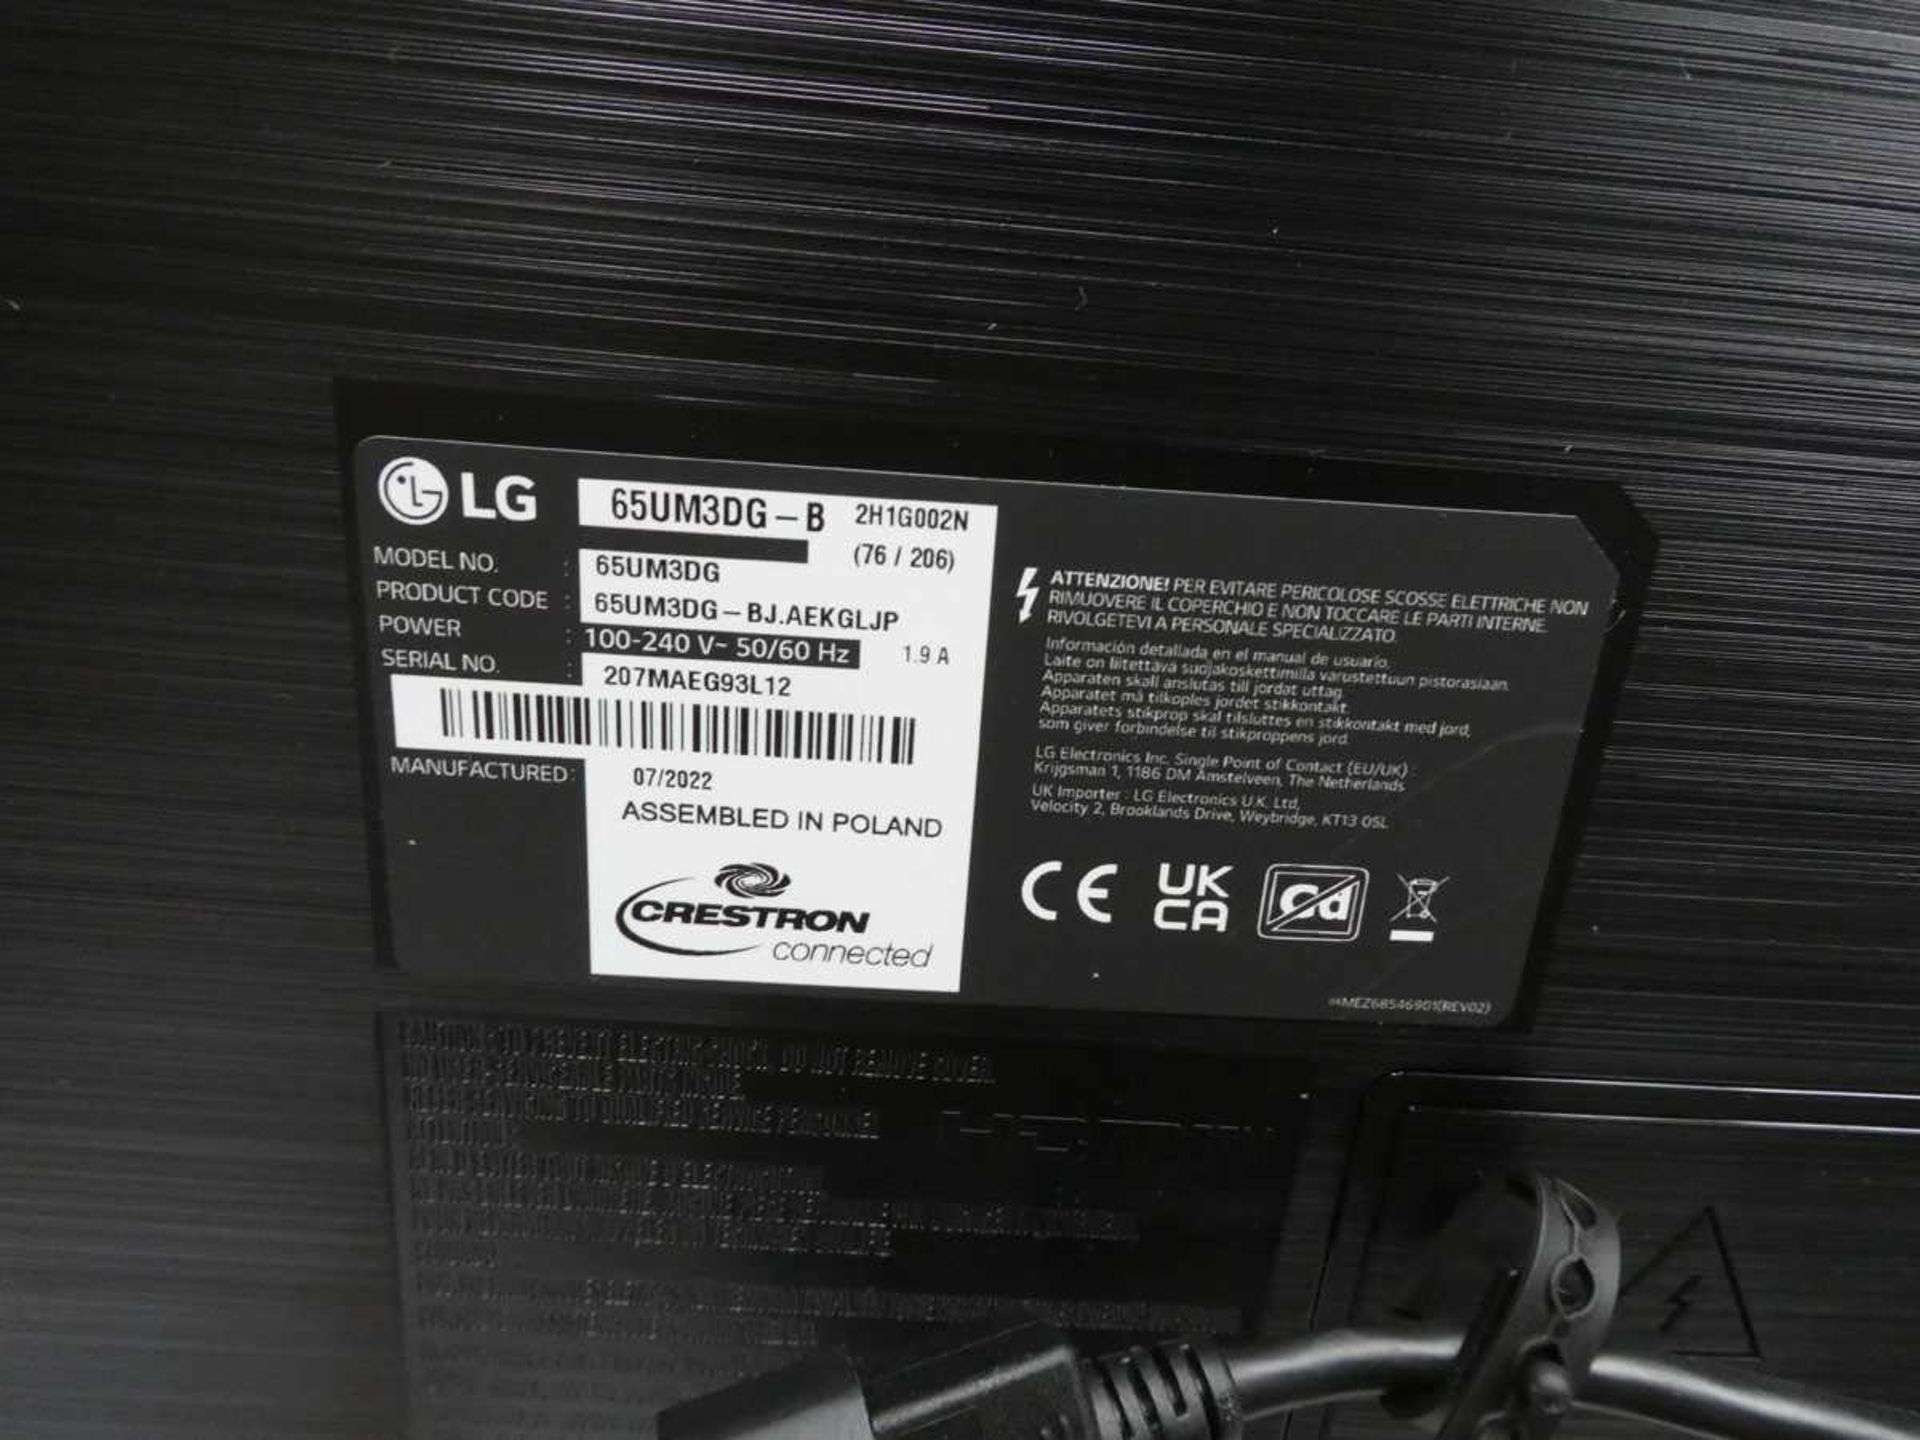 LG Model 65UM3DG 65" Digital Signage Display 4K UHD LED Monitor with detachable remote sensor, - Image 3 of 3